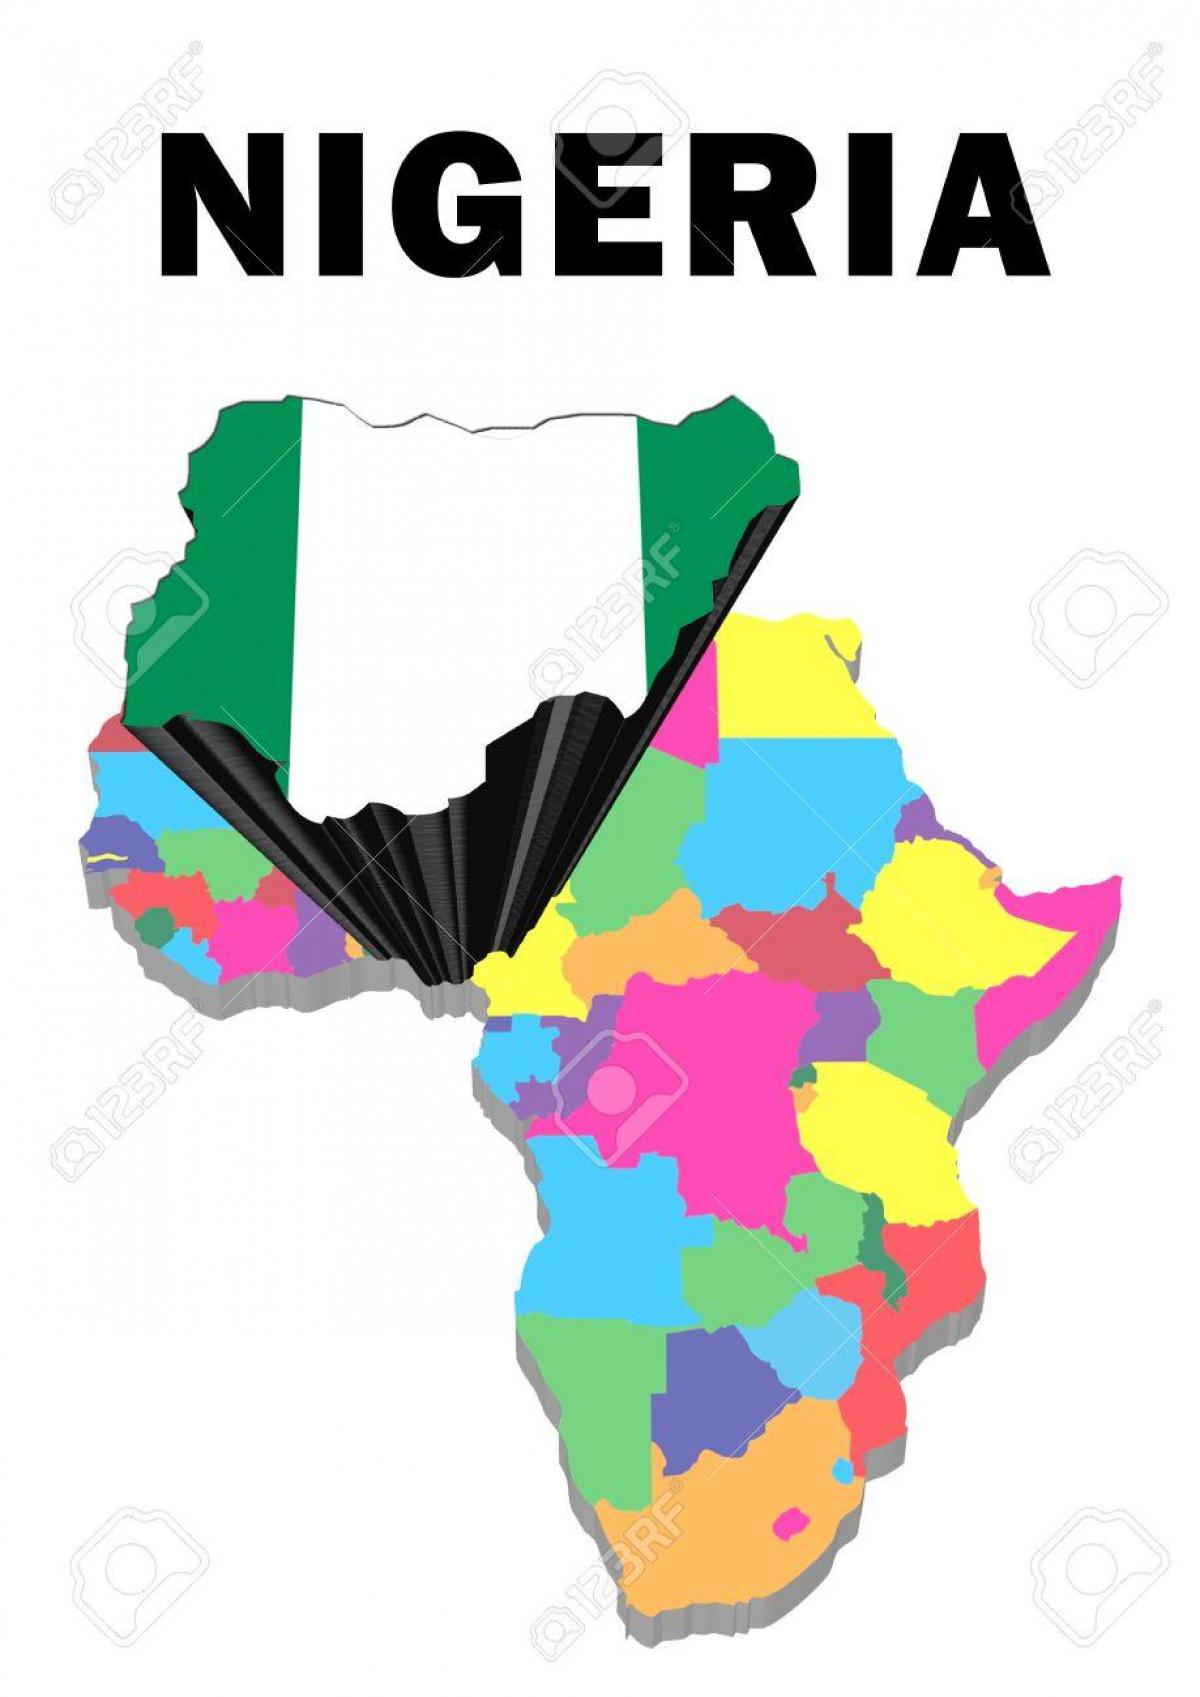 térkép afrika nigéria kiemelt